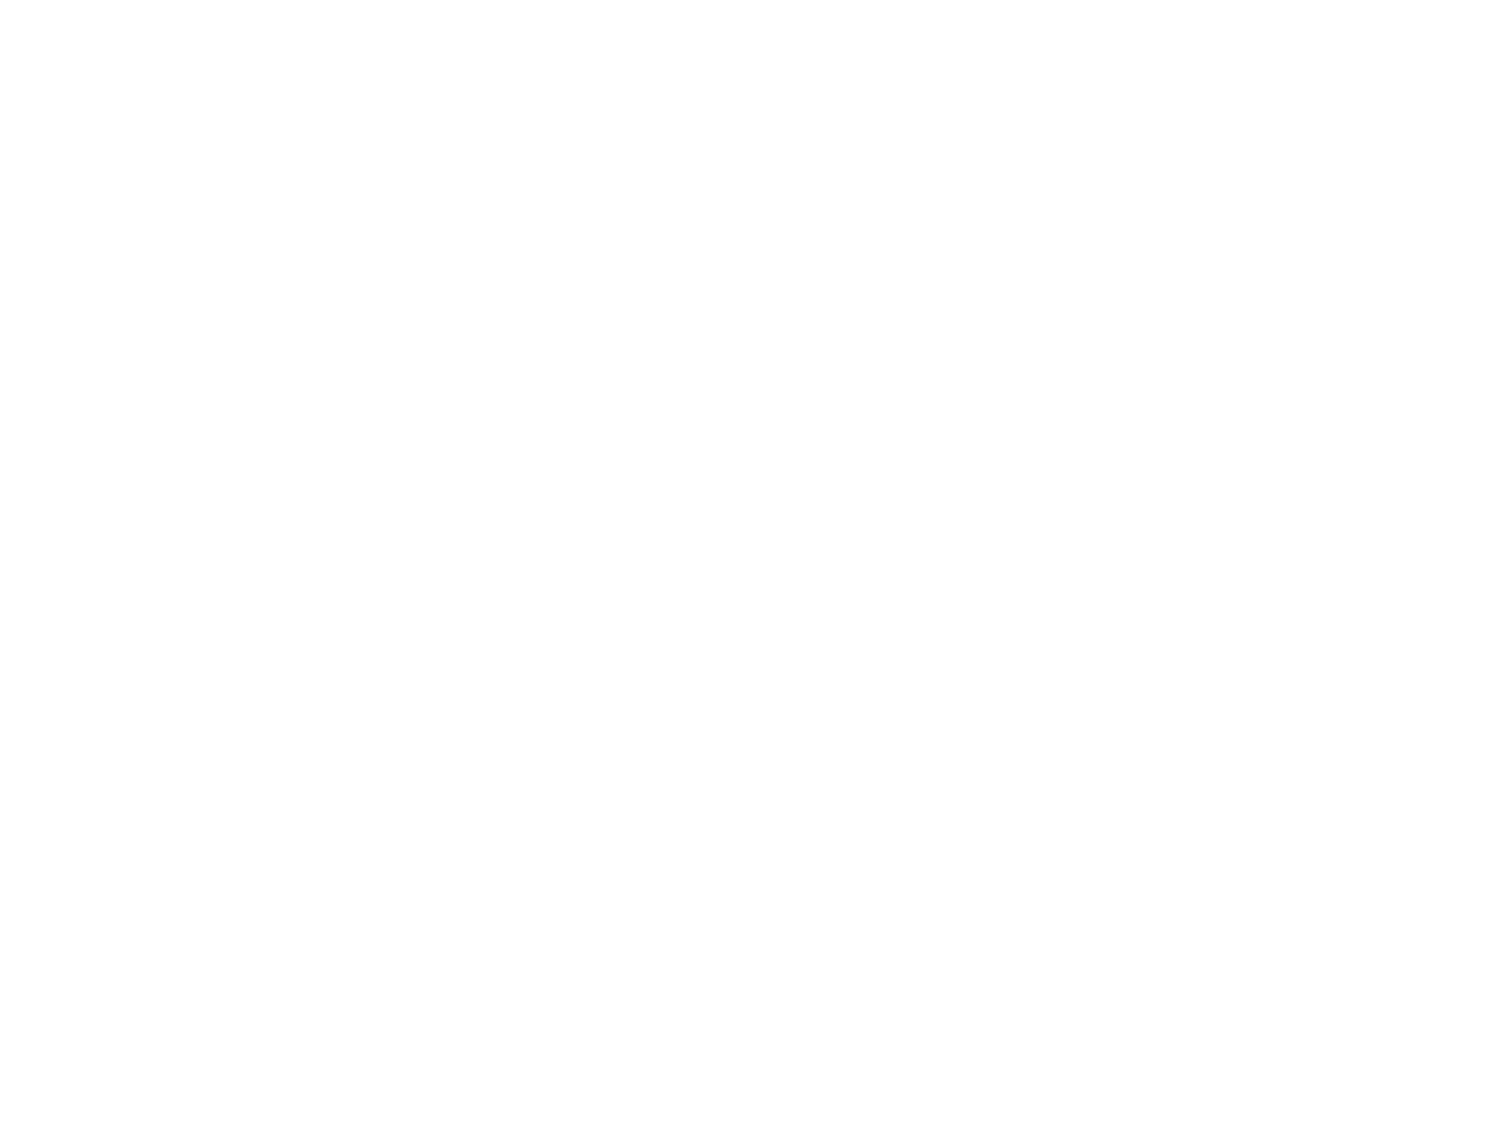 Serverworks logo for dark backgrounds (transparent PNG)